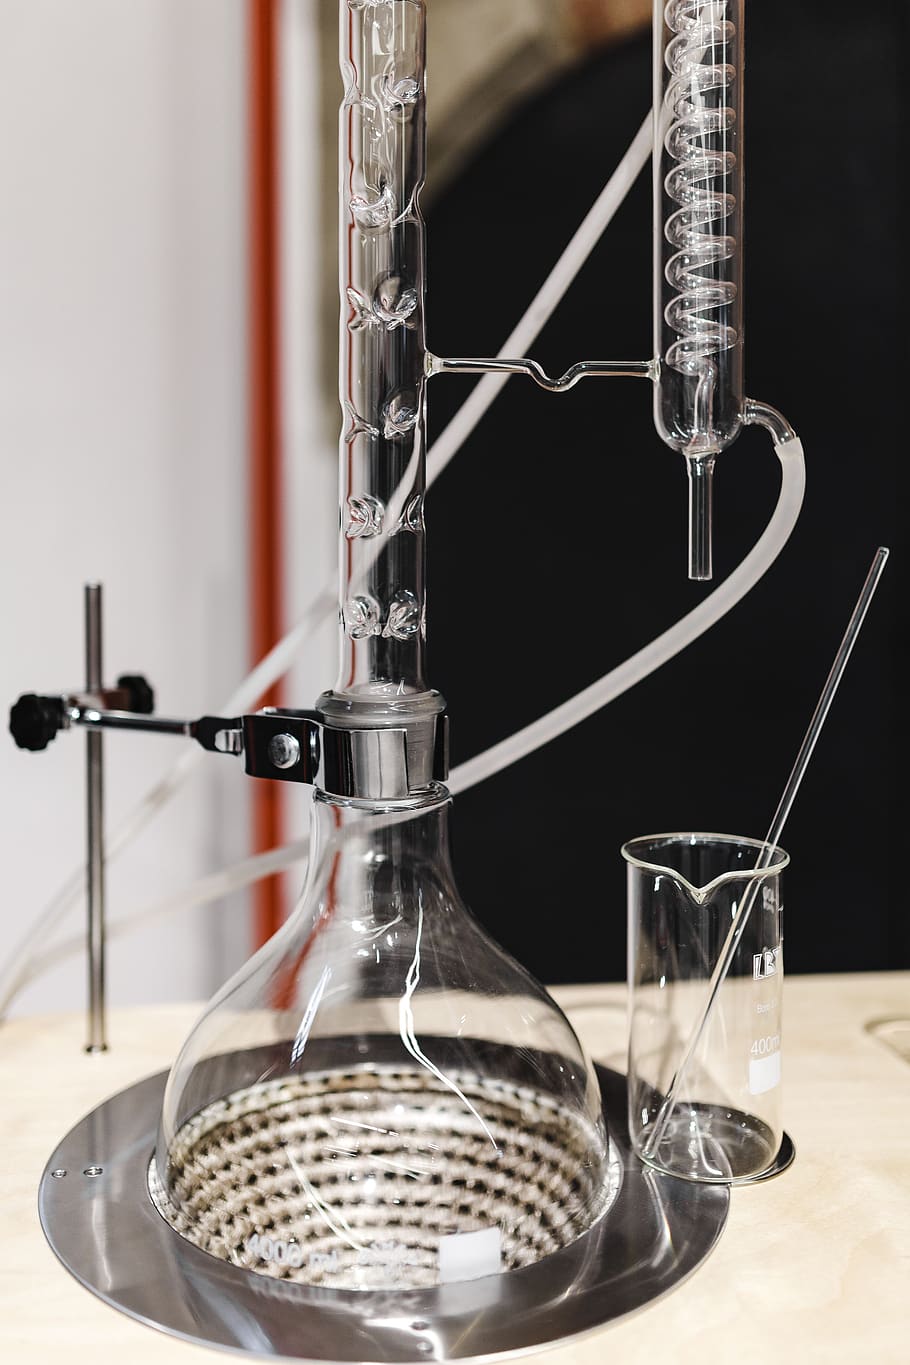 destilación, equipo, experimento, química, reacción, aparato, ciencia, químico, mezcla, vidrio